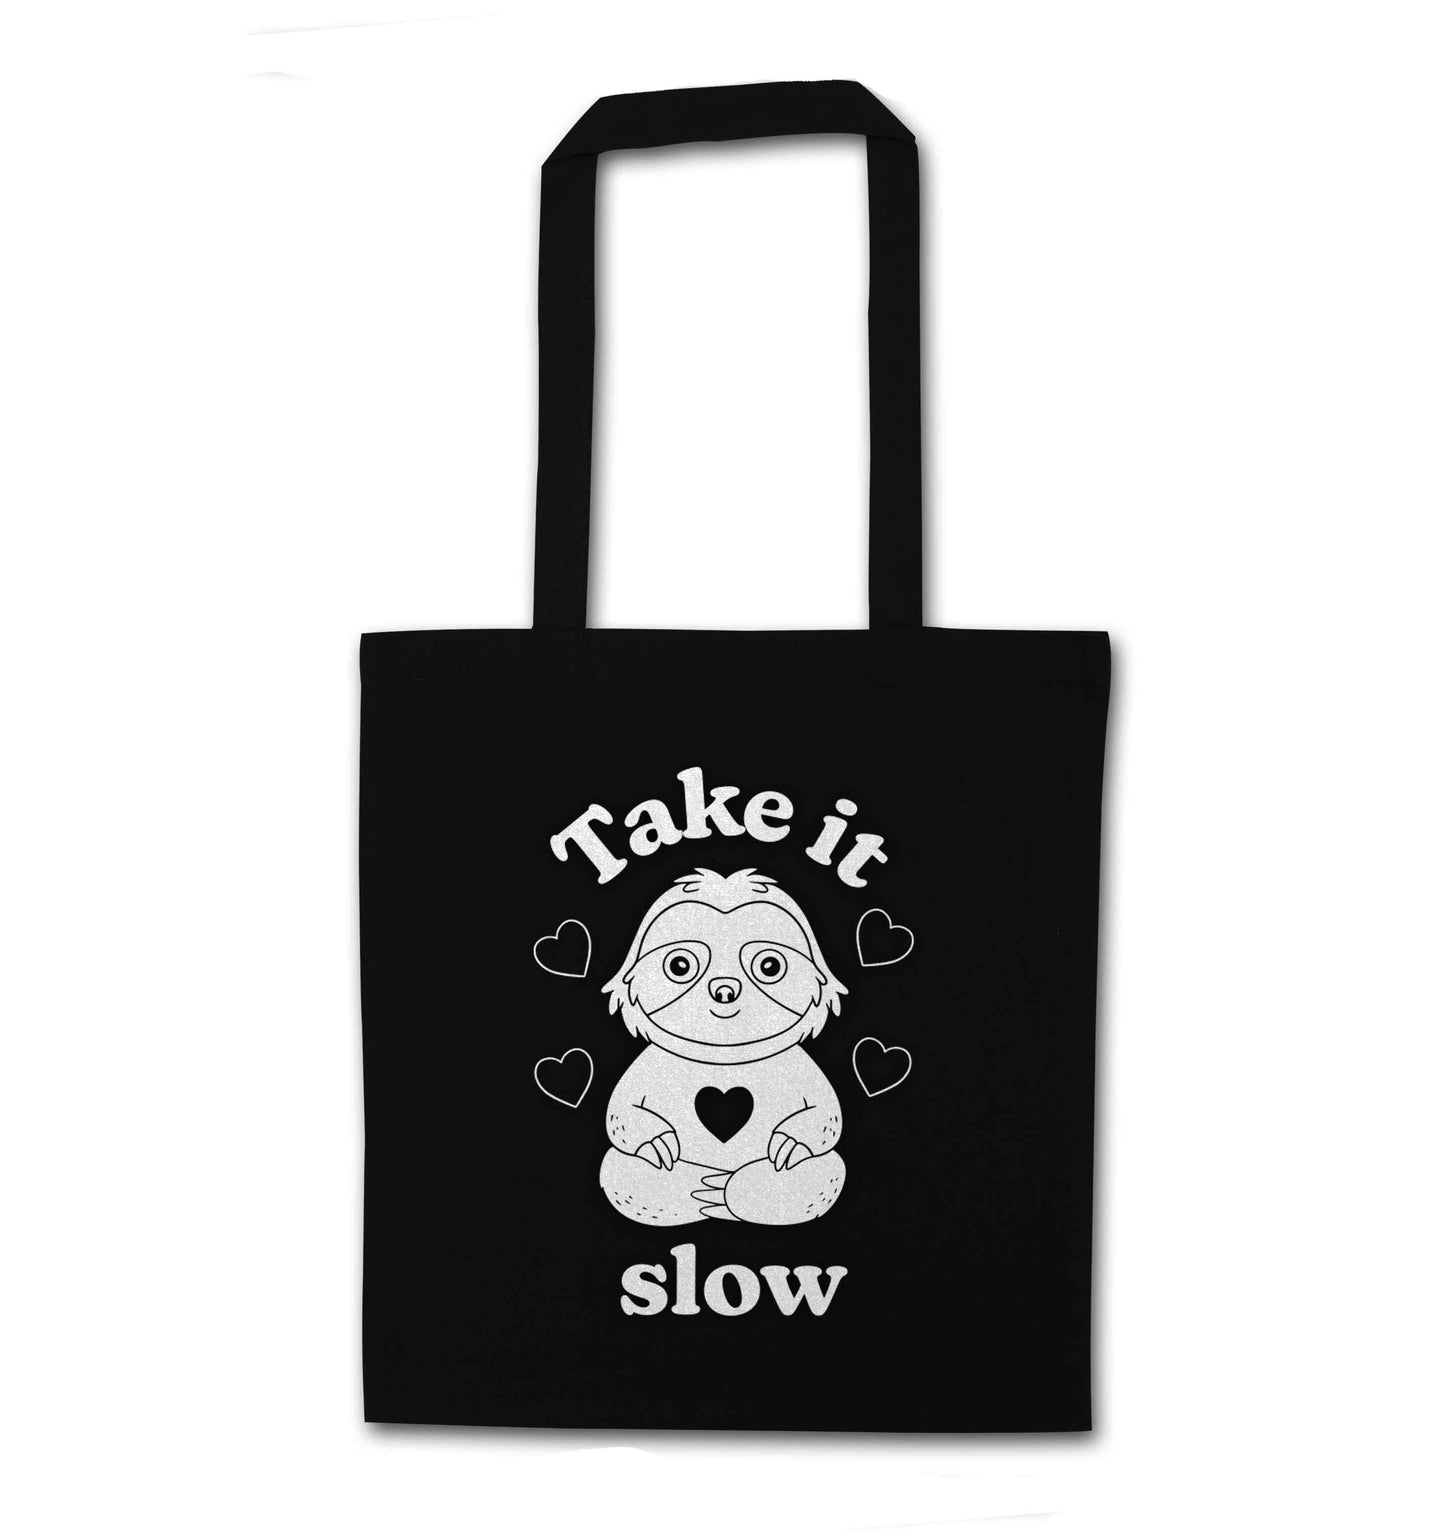 Take it slow black tote bag